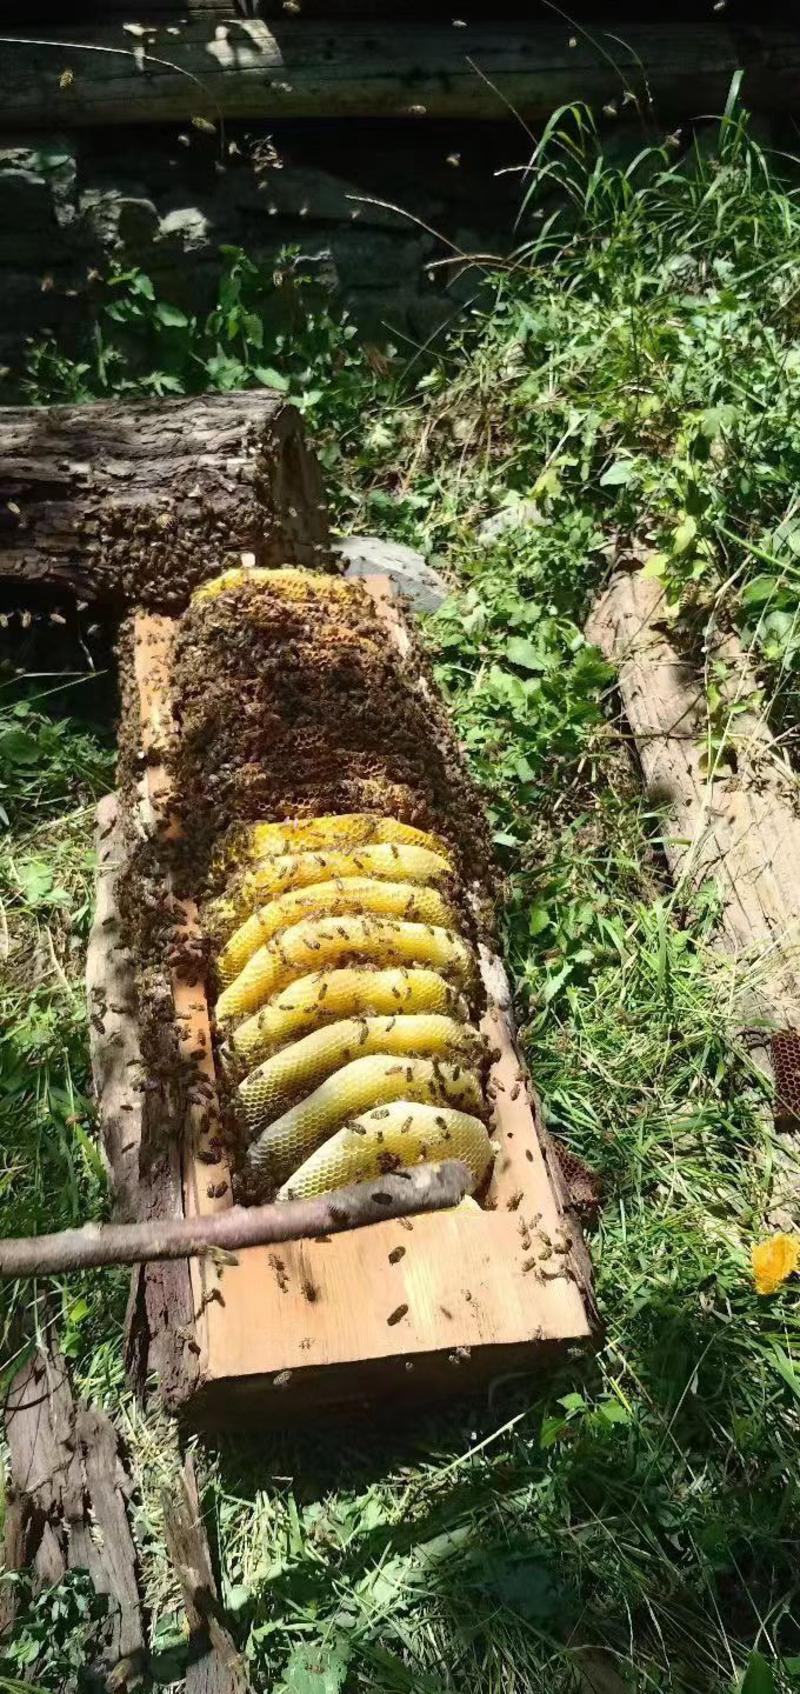 高原天然无污染土蜂蜜无添加波美度41-43度每年一季